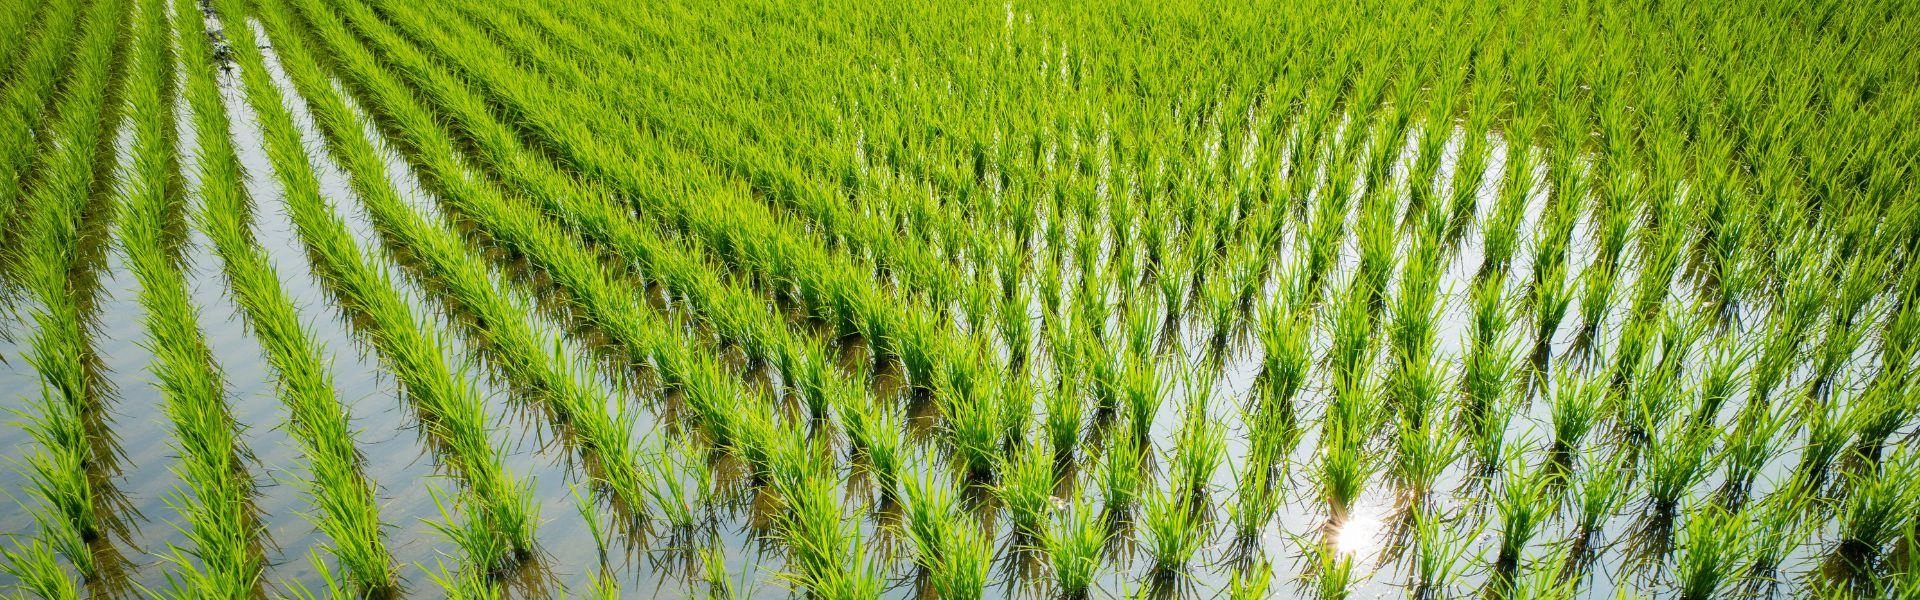 Cultivo de arroz durante o novo plano safra.